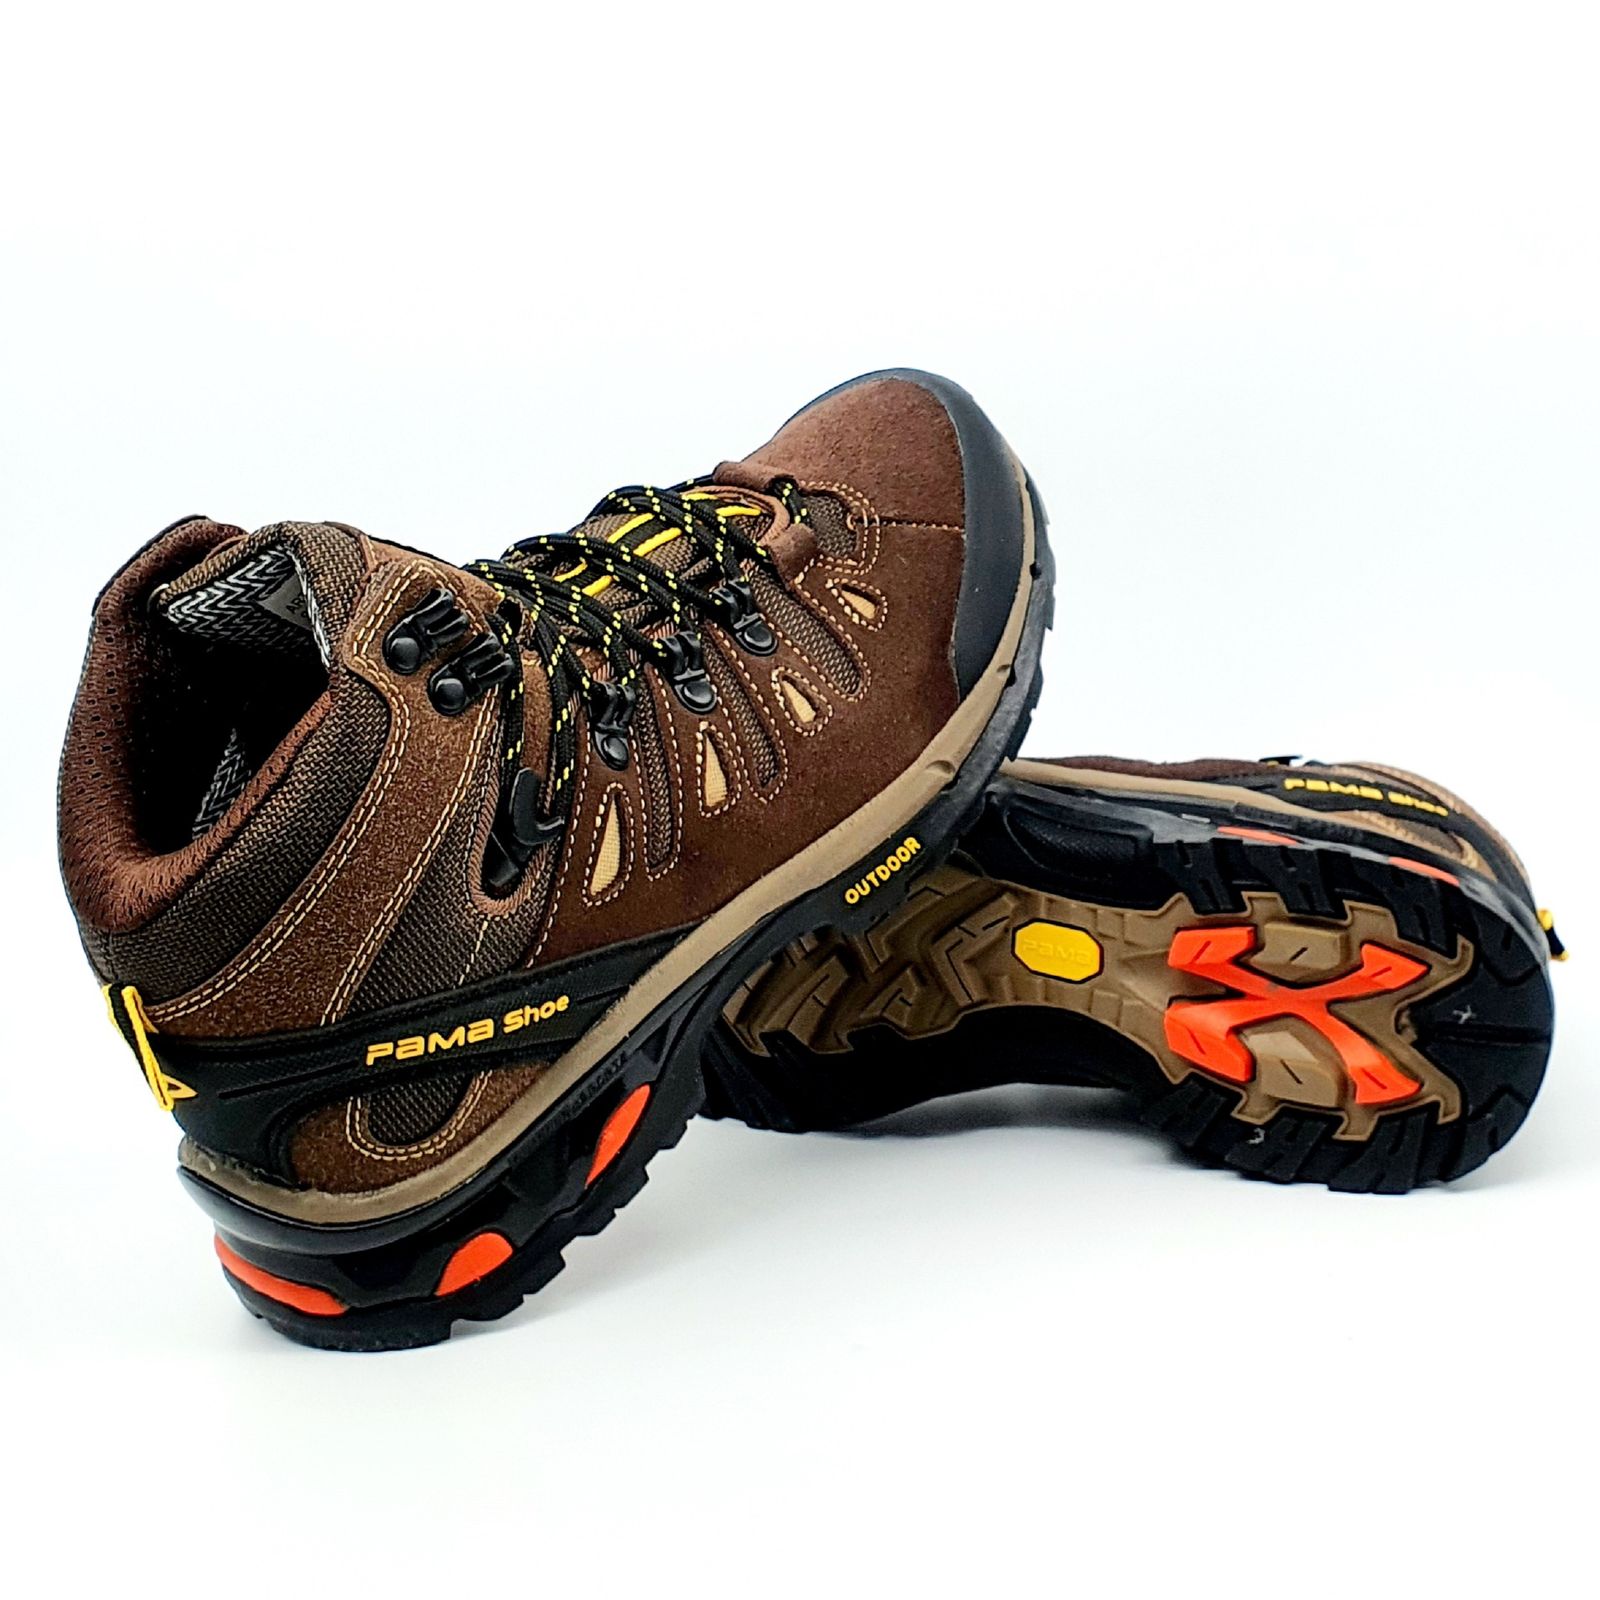 کفش کوهنوردی مردانه پاما مدل NBS-829 کد G1628 -  - 9